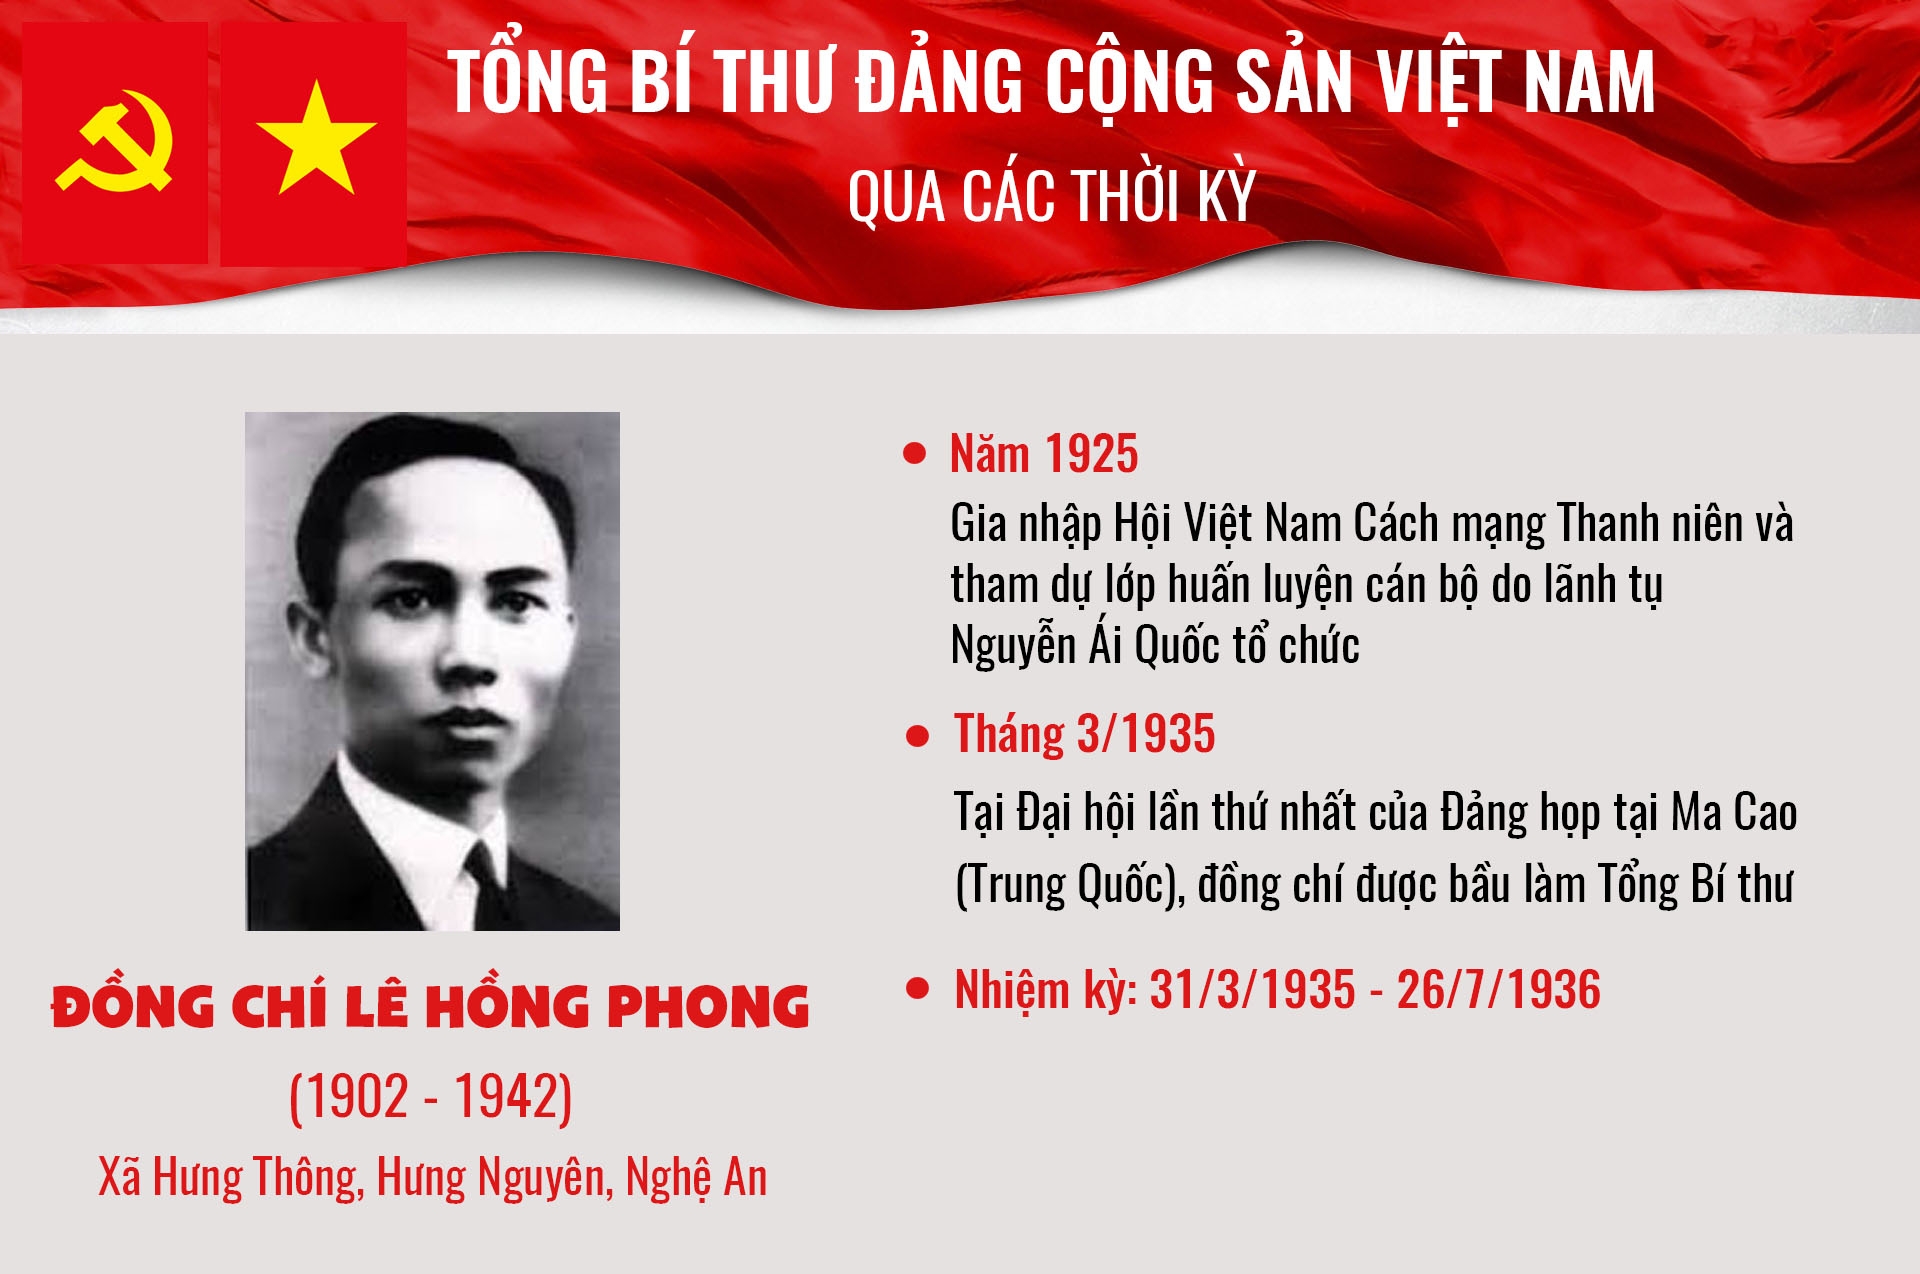 infographic tong bi thu dang cong san viet nam qua cac thoi ky